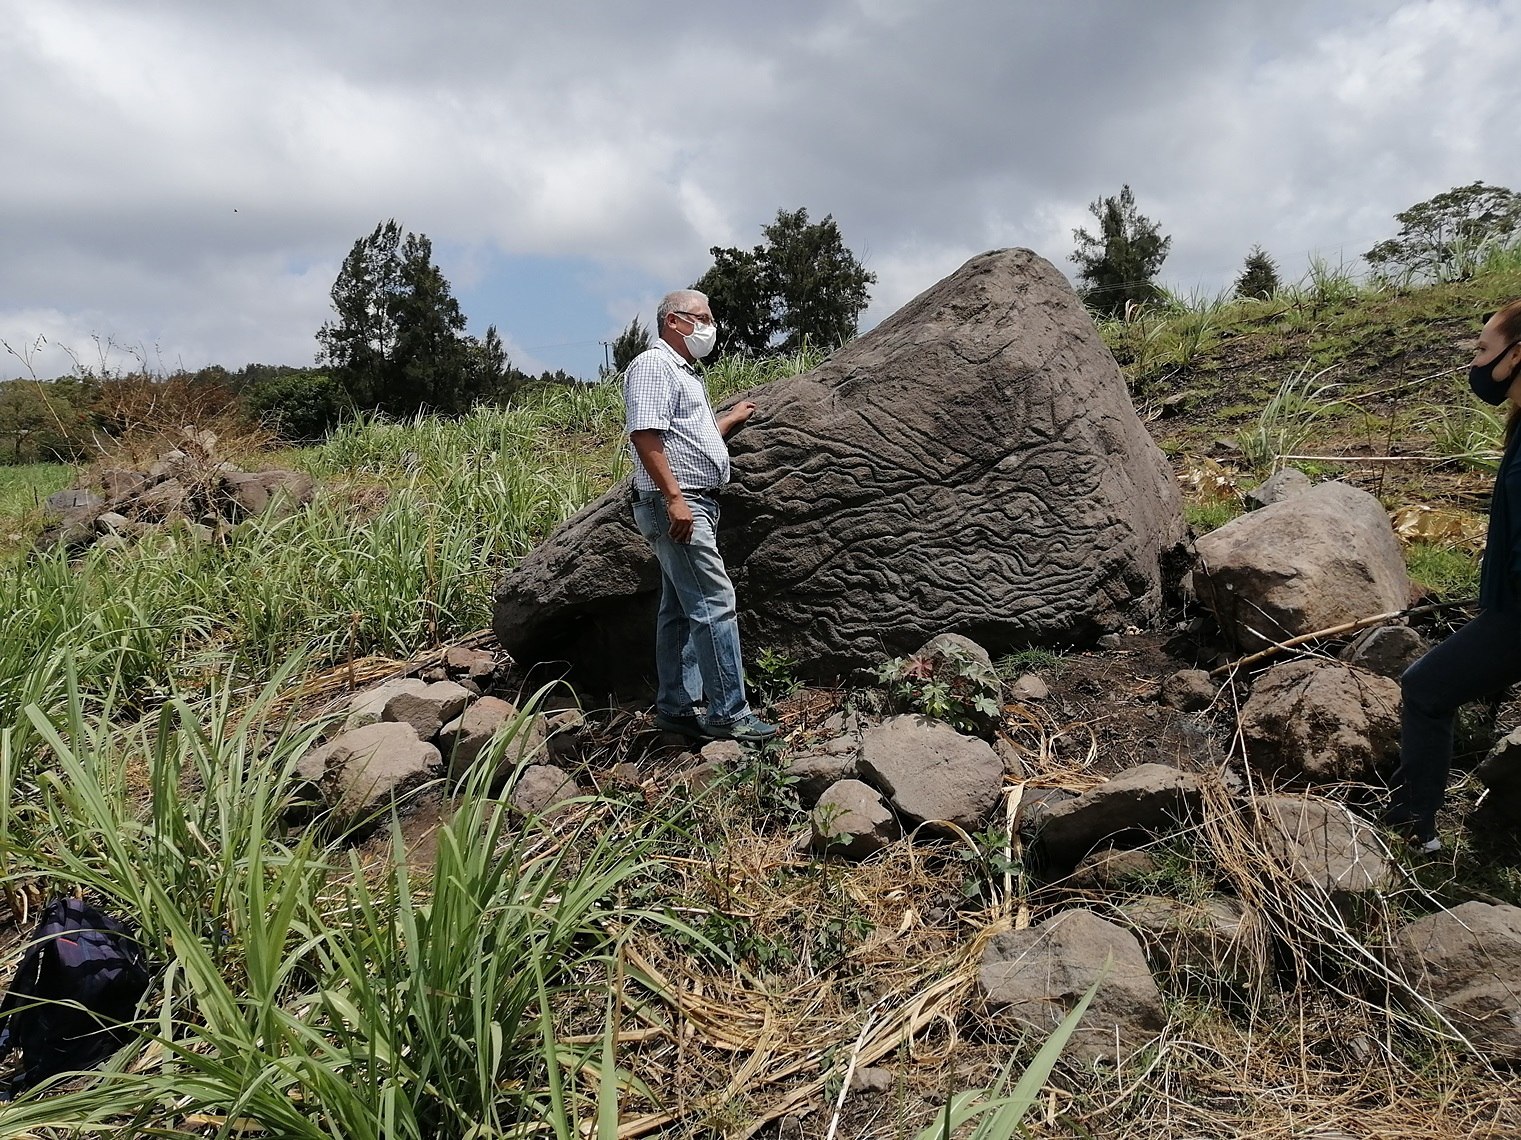 Un petroglifo usado como 'piedra-mapa' hace alrededor de 2.000 años fue registrado por el INAH de México, en el estado de Colima. La piedra tiene oquedades que representarían aldeas, así como líneas asociadas con veras hidrológicas y accidentes orográficos. (Foto Prensa Libre: EFE)